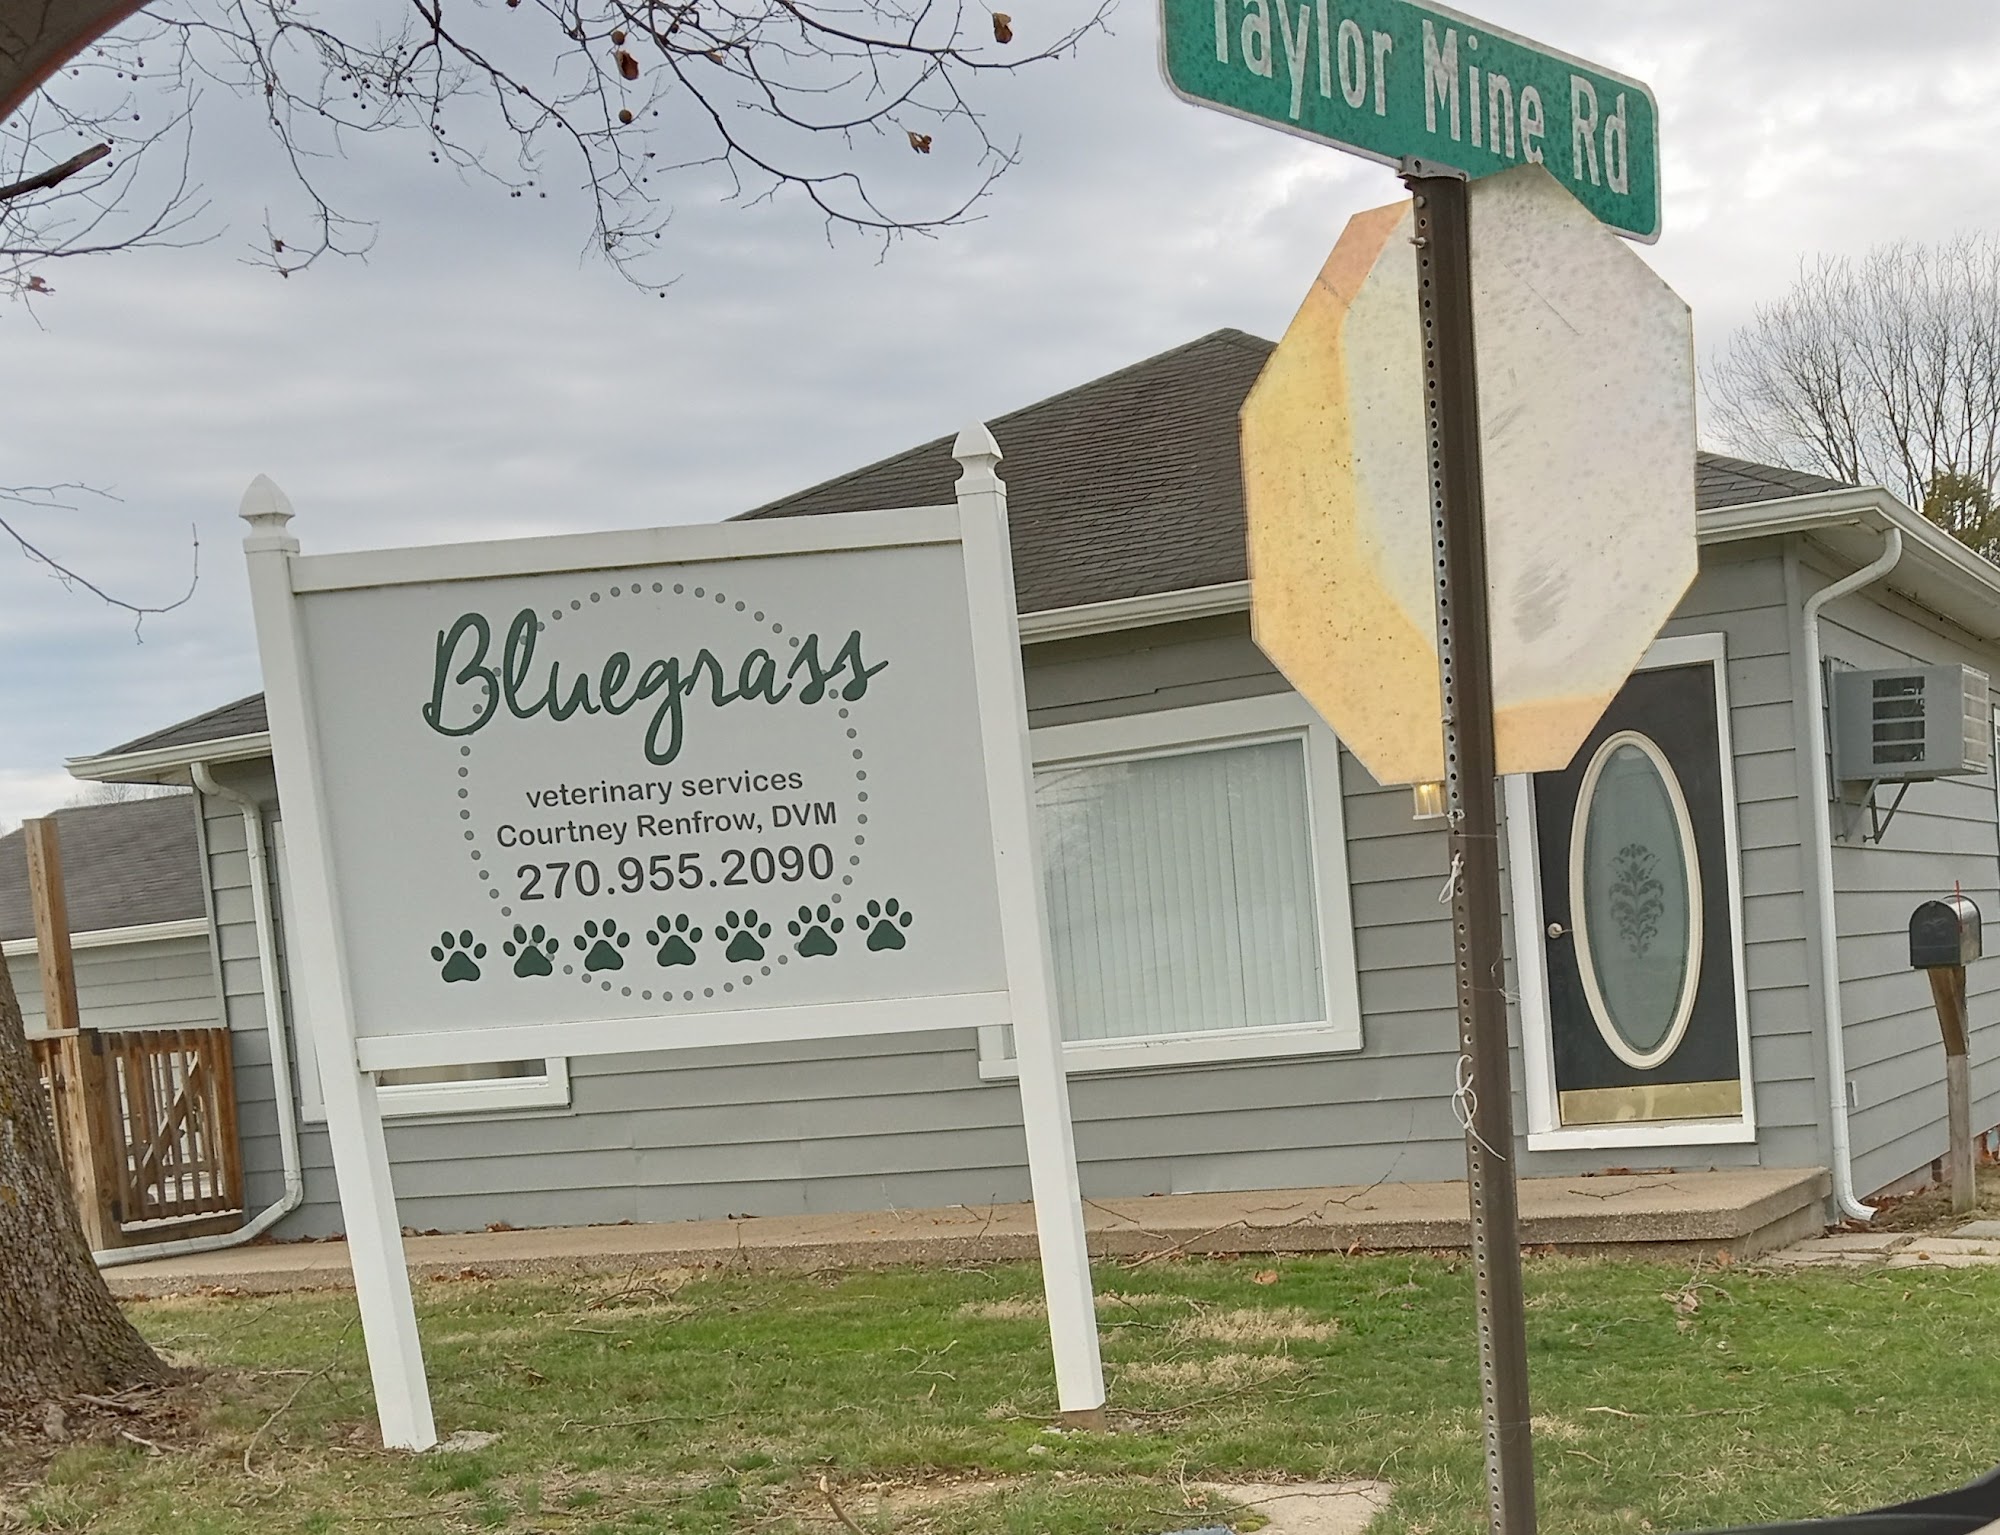 Bluegrass Veterinary Services, PLLC 602 S Main St, Beaver Dam Kentucky 42320